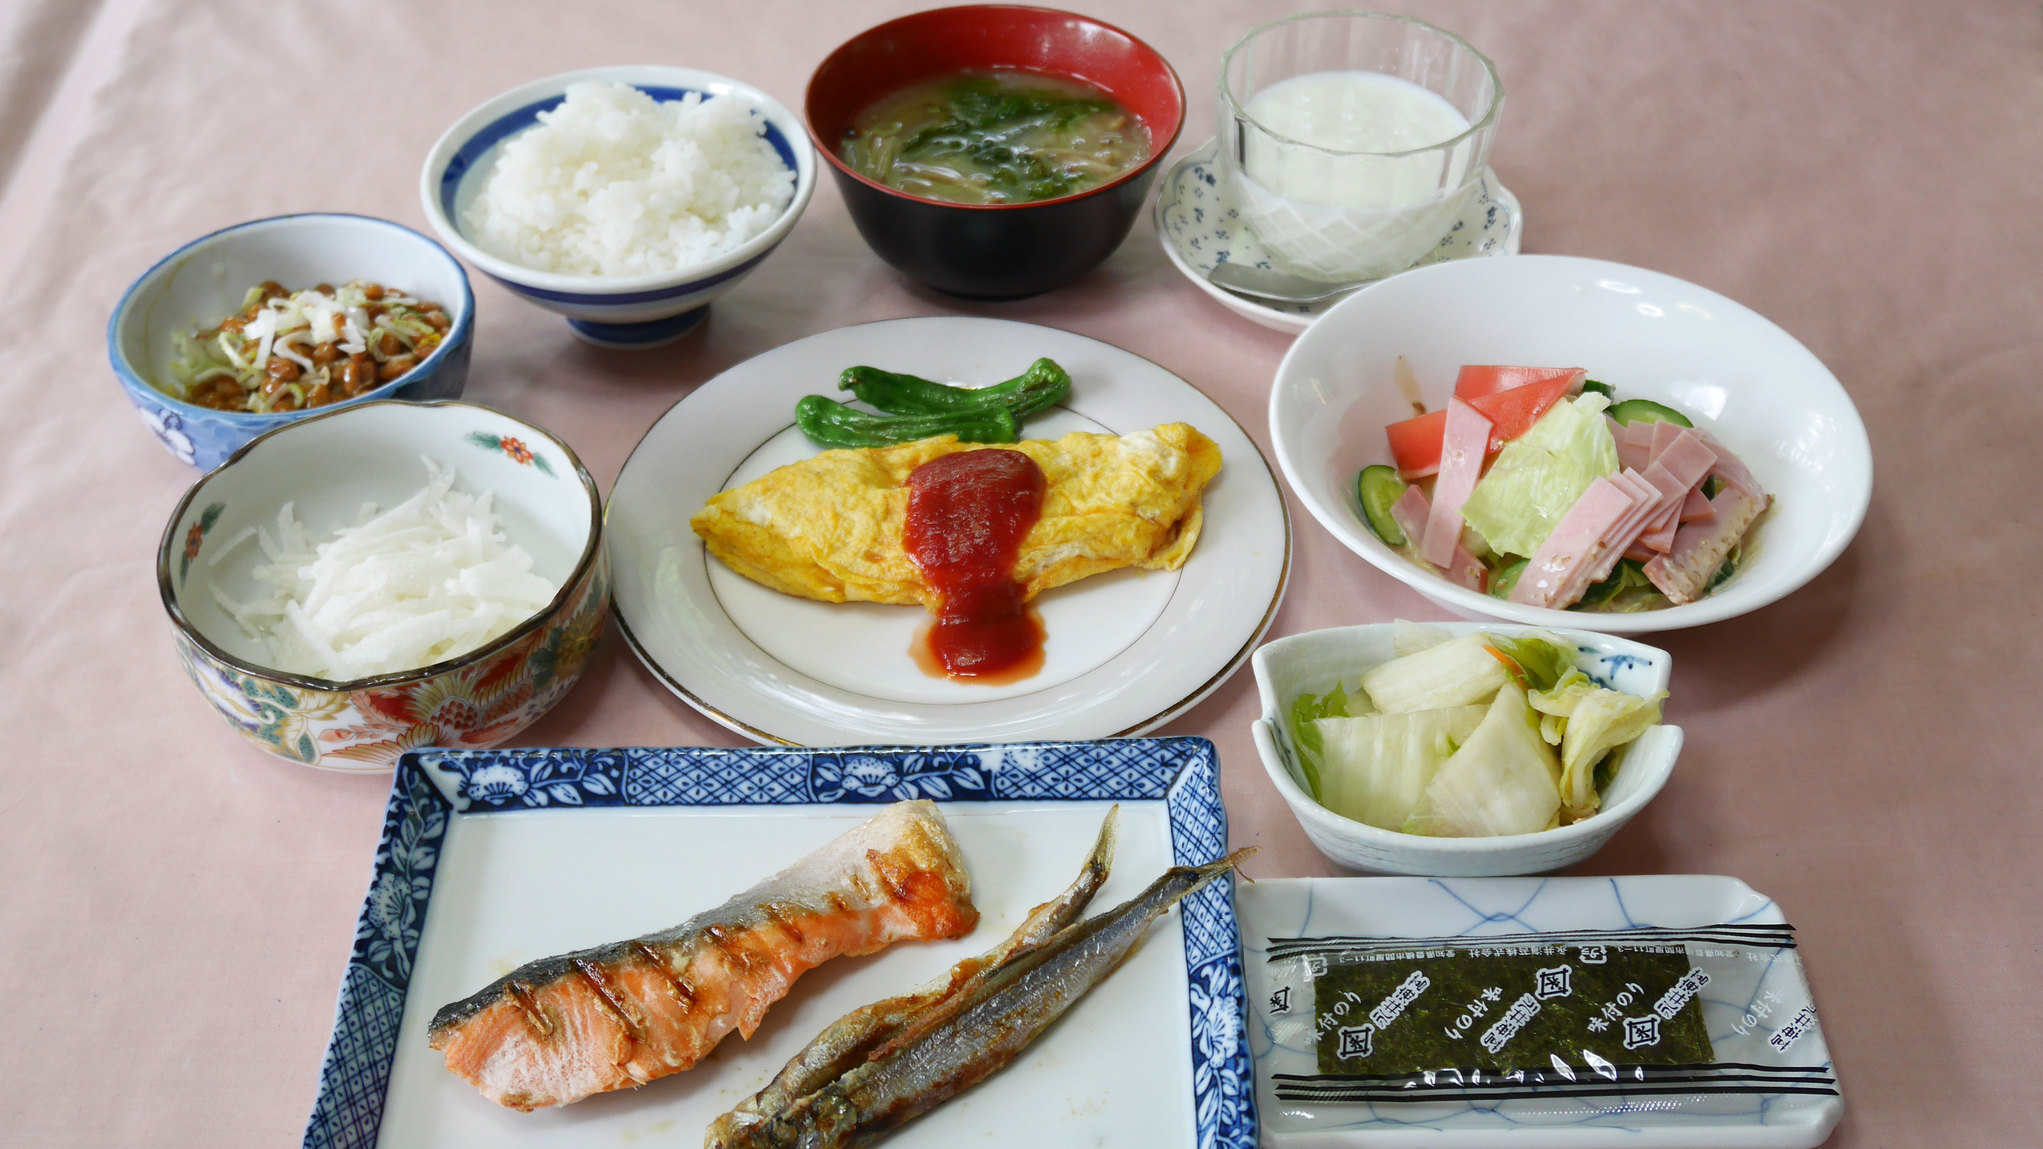 *【食事/朝食一例】新潟特産のお米を使用した、朝から身体が元気になる朝食をご用意します。